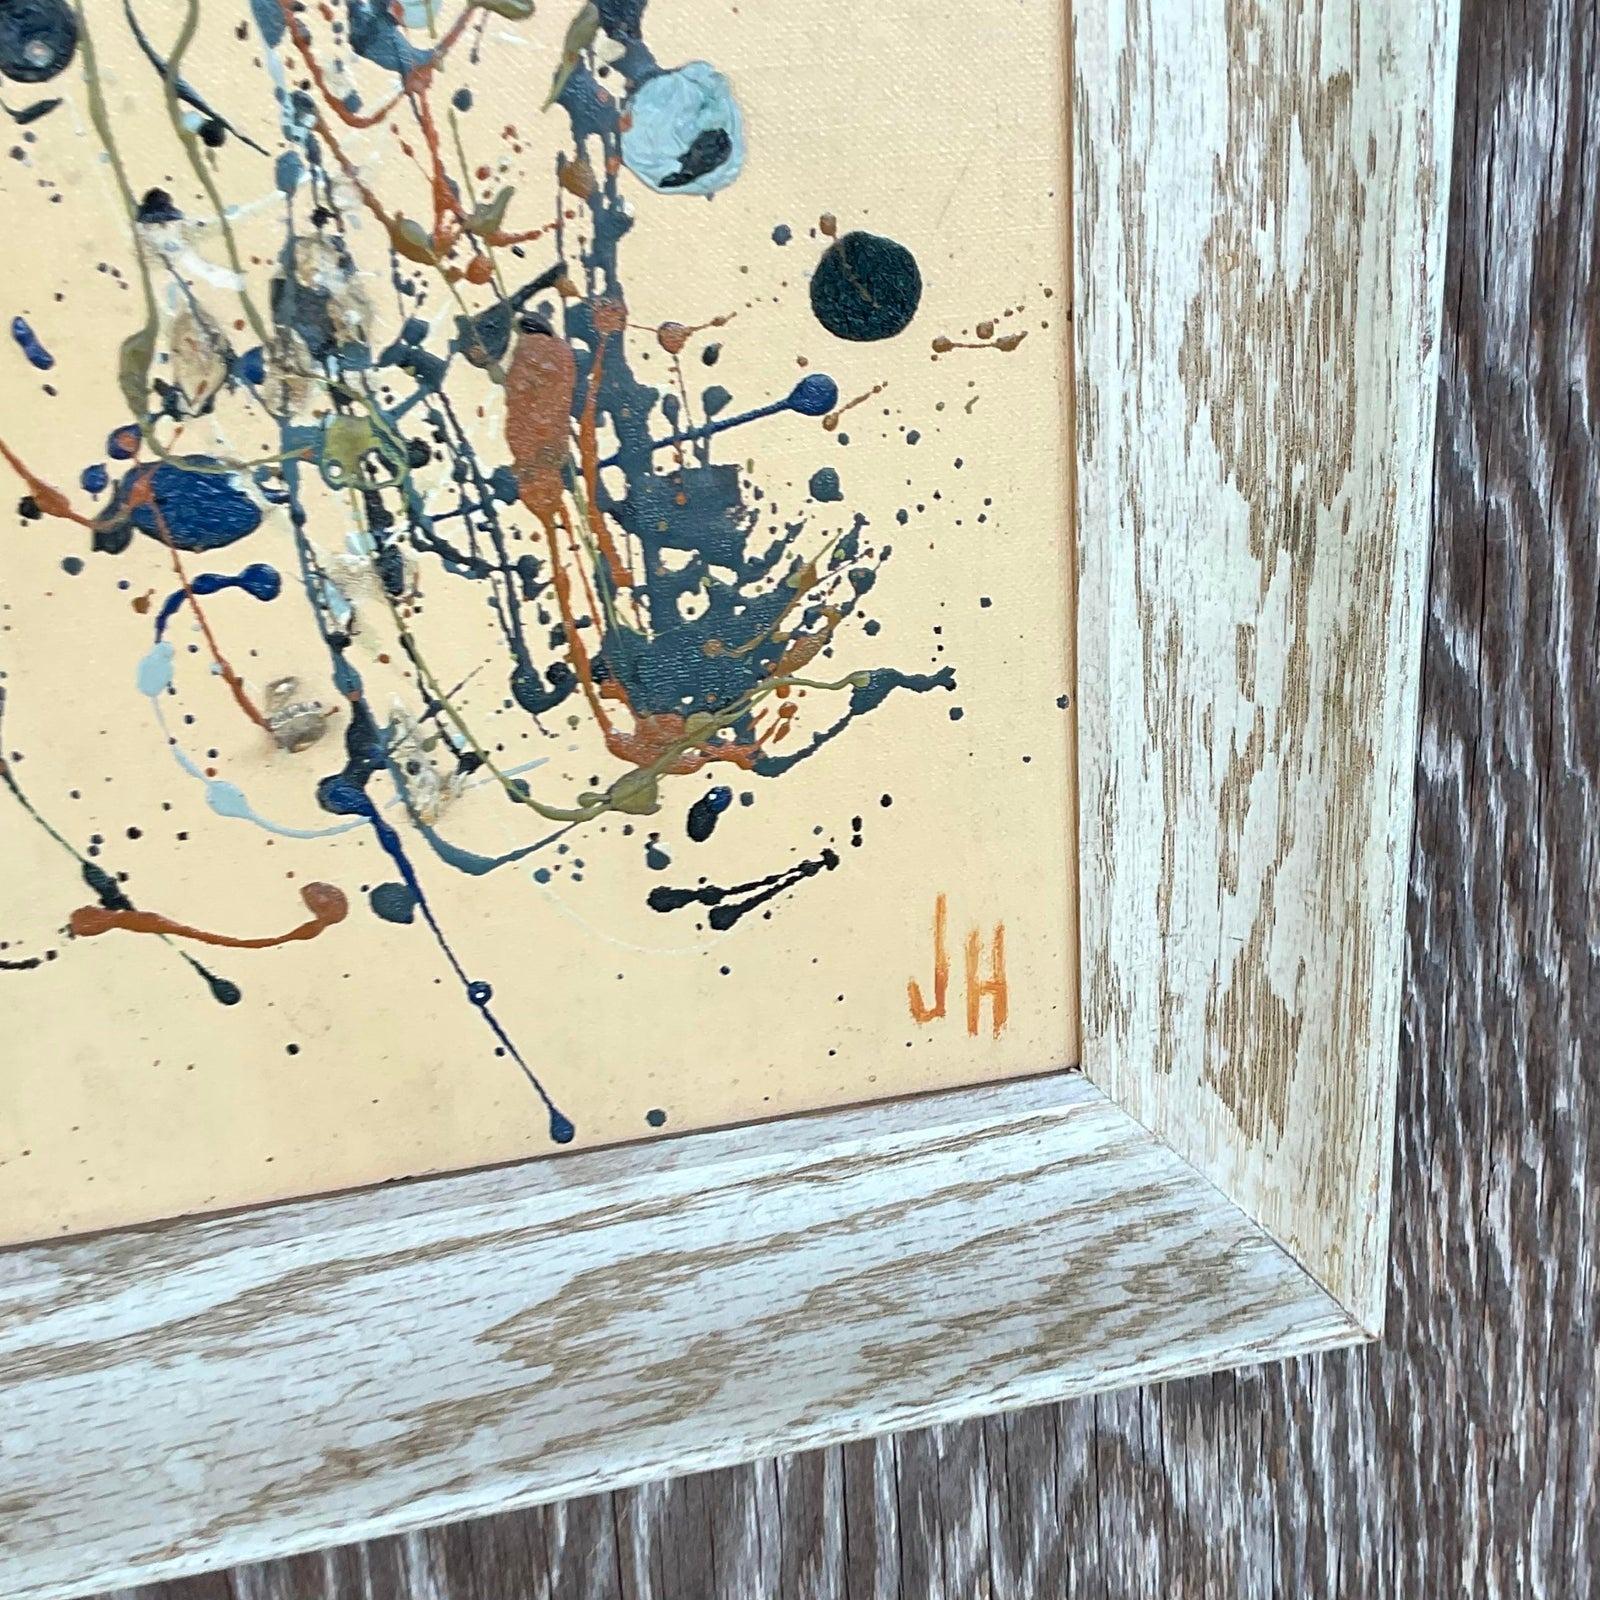 Eine fabelhafte Vintage Original Ölgemälde auf dem Brett. Eine schicke abstrakte Komposition im Stil von Jackson Pollack. Gerahmt in cerused oak und vom Künstler signiert. Erworben aus einem Nachlass in Palm Beach. 